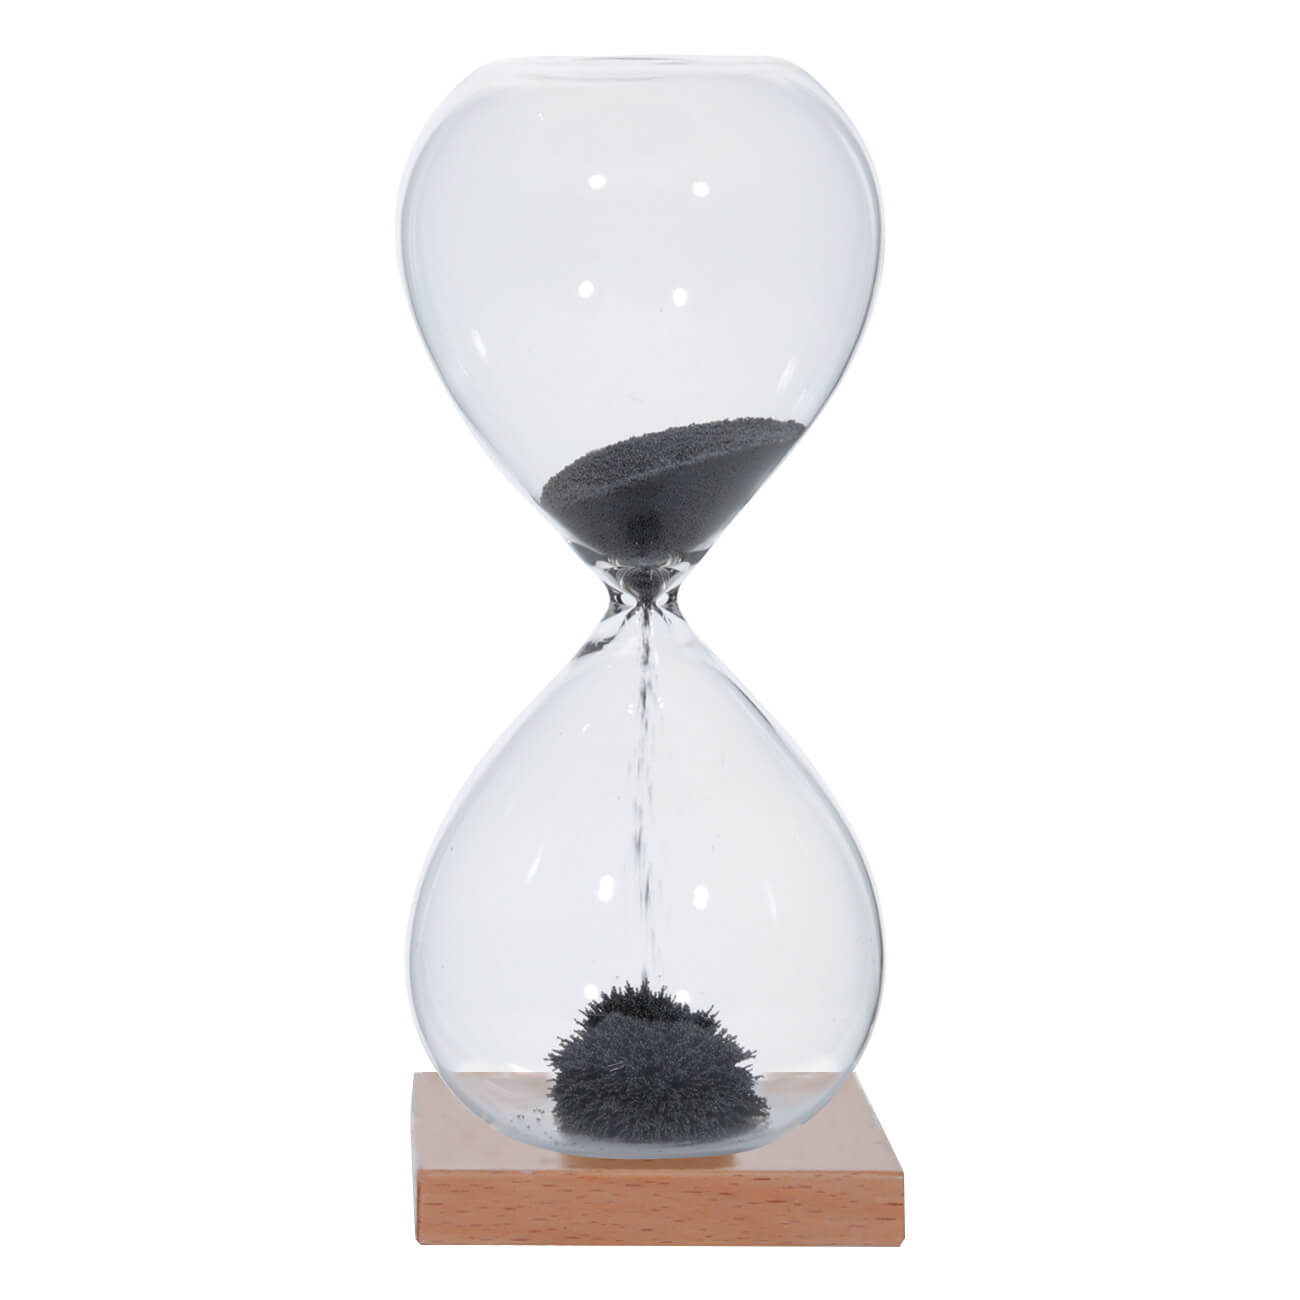 Часы песочные, 16 см, 1 минута, магнитные, на подставке, стекло/дерево, серые, Sand time ручка на подставке подкова с кристаллами